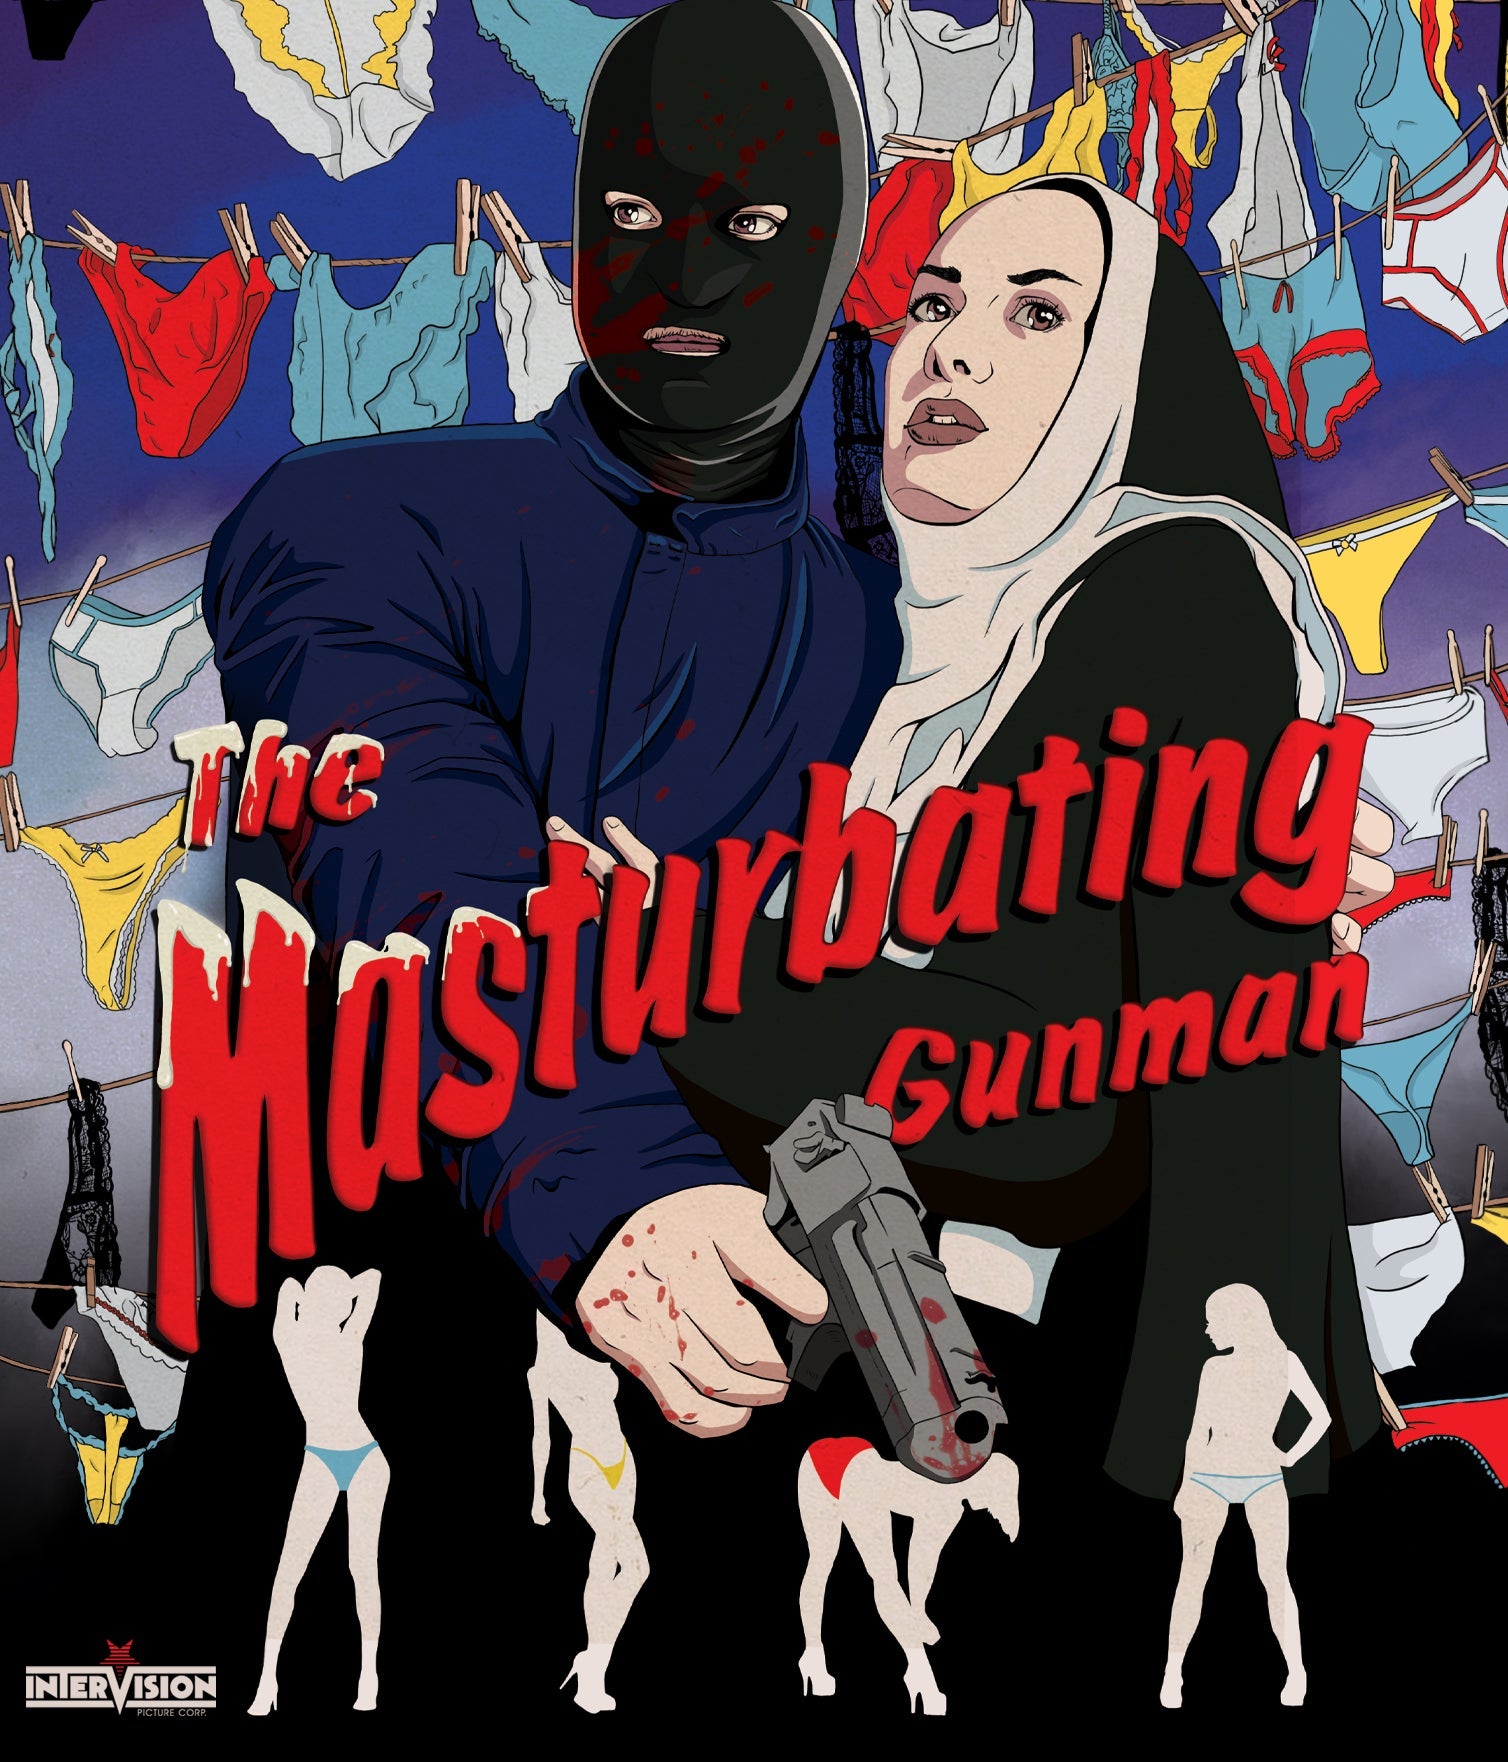 The Masturbating Gunman Blu-Ray Blu-Ray